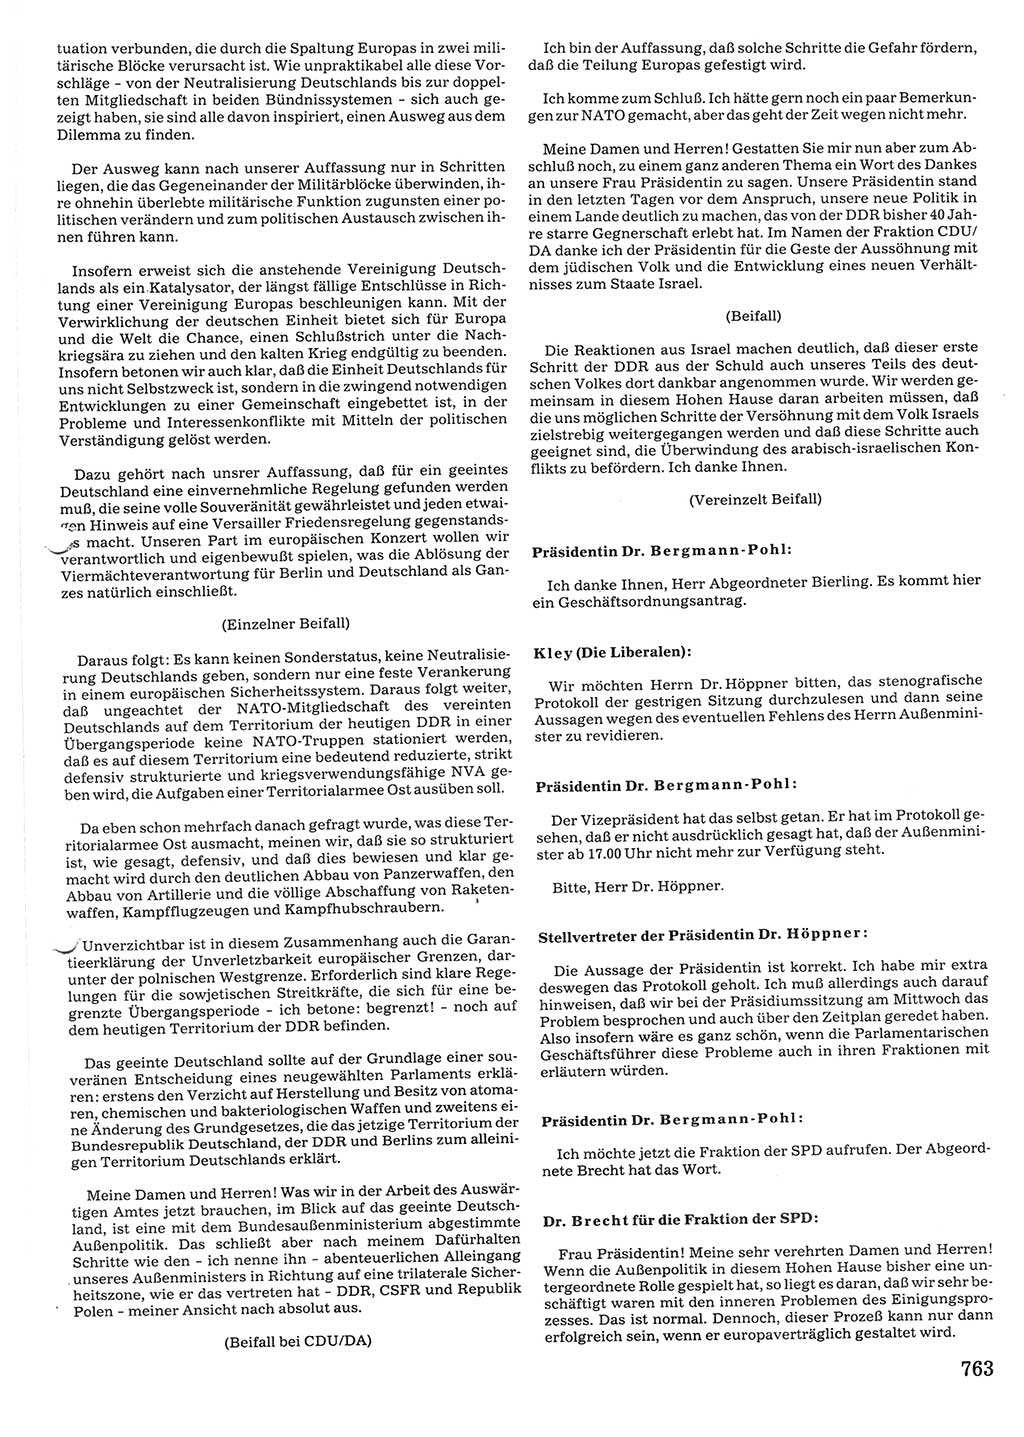 Tagungen der Volkskammer (VK) der Deutschen Demokratischen Republik (DDR), 10. Wahlperiode 1990, Seite 763 (VK. DDR 10. WP. 1990, Prot. Tg. 1-38, 5.4.-2.10.1990, S. 763)